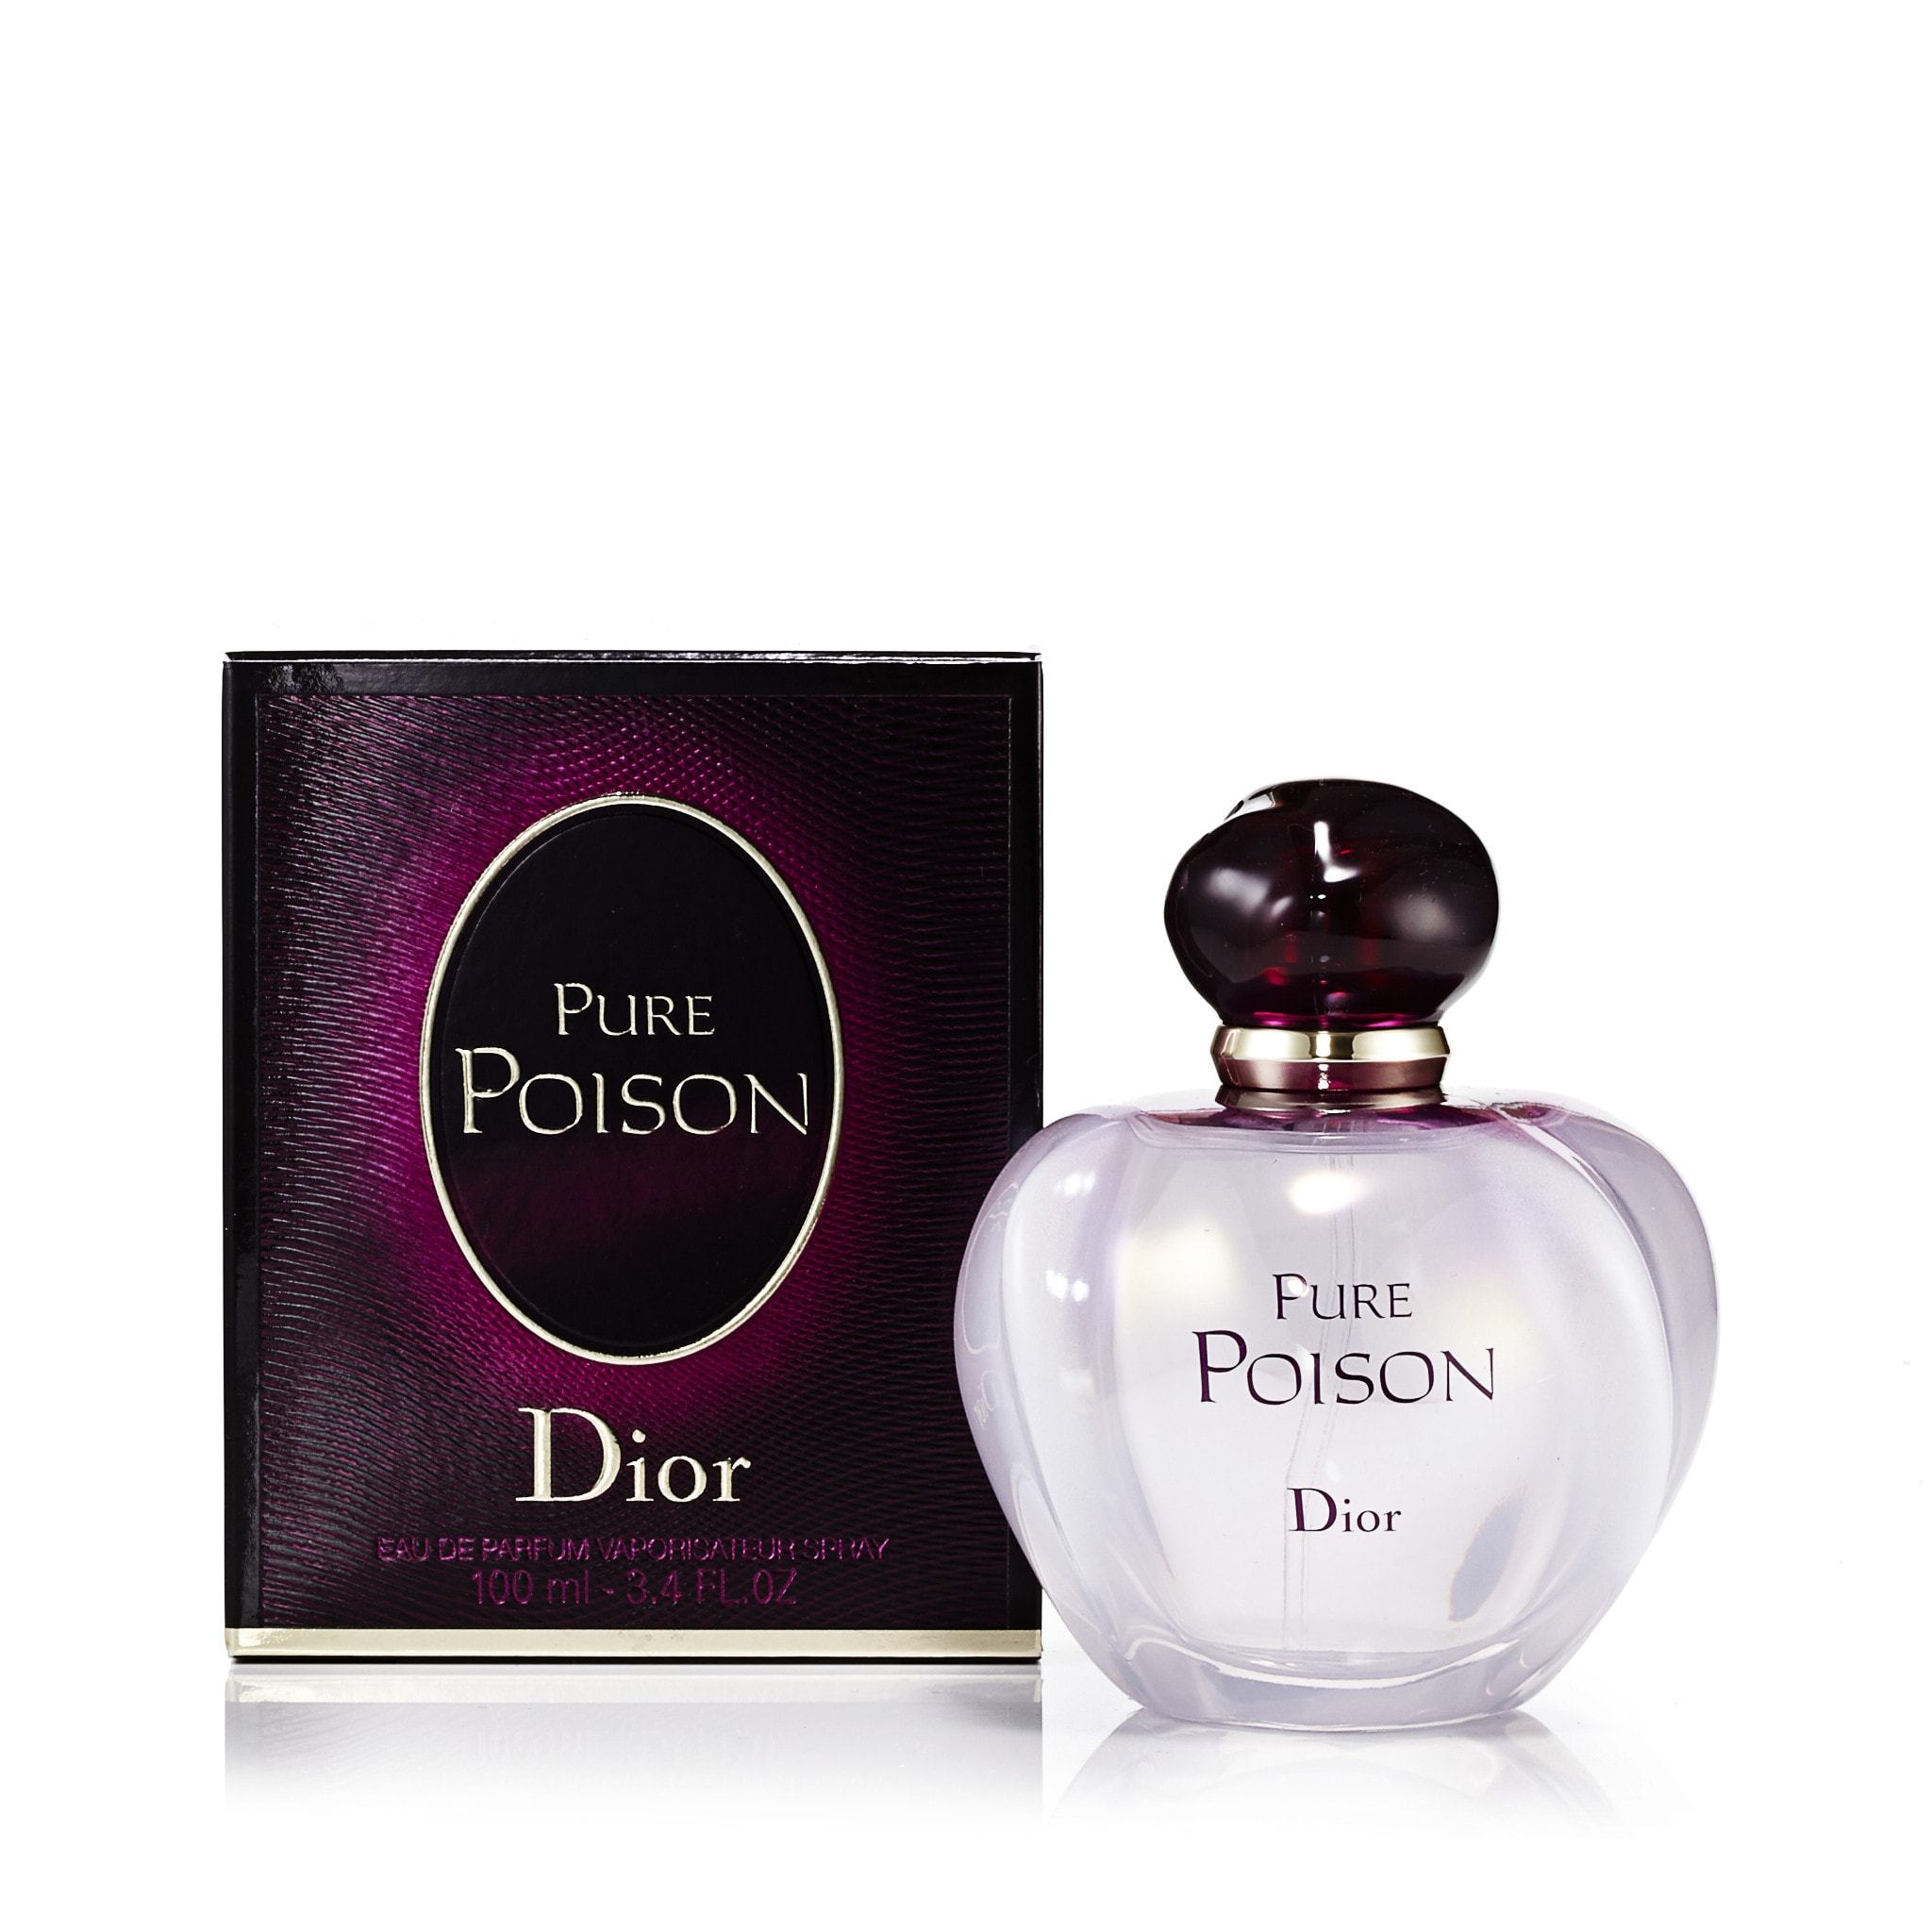 Pure Poison Eau de Parfum Spray for Women by Dior